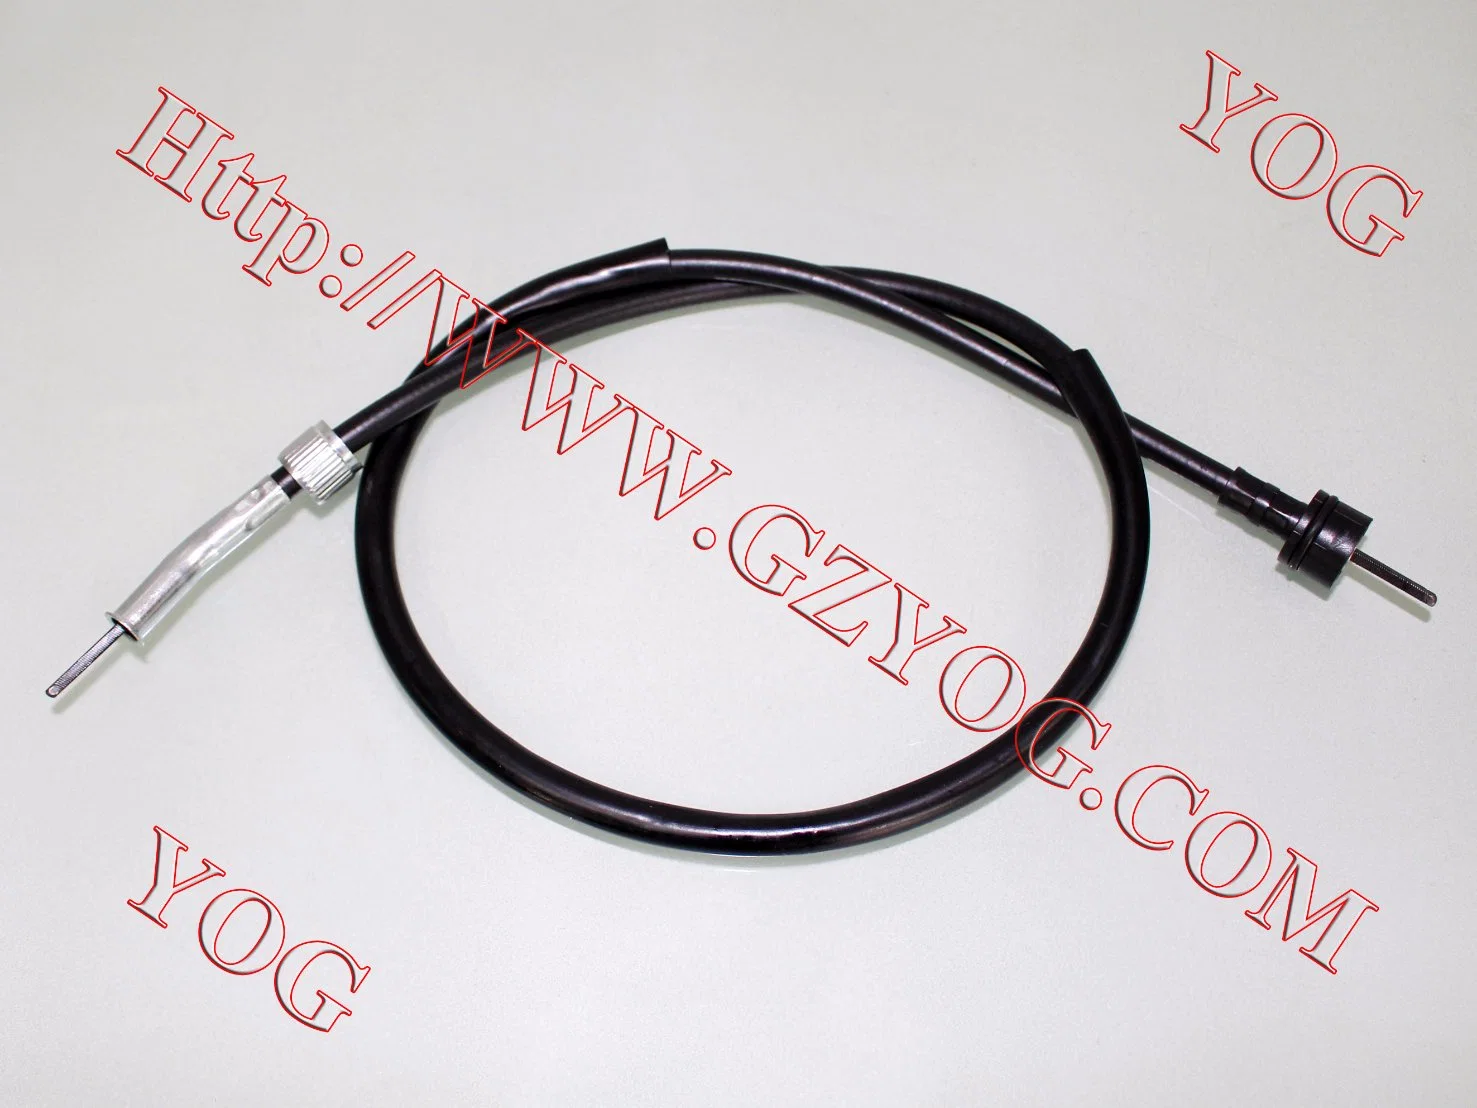 El cable de Velocimetro motocicleta yamaha ybr125 Cable del velocímetro DT110DT125la entrega de entrega